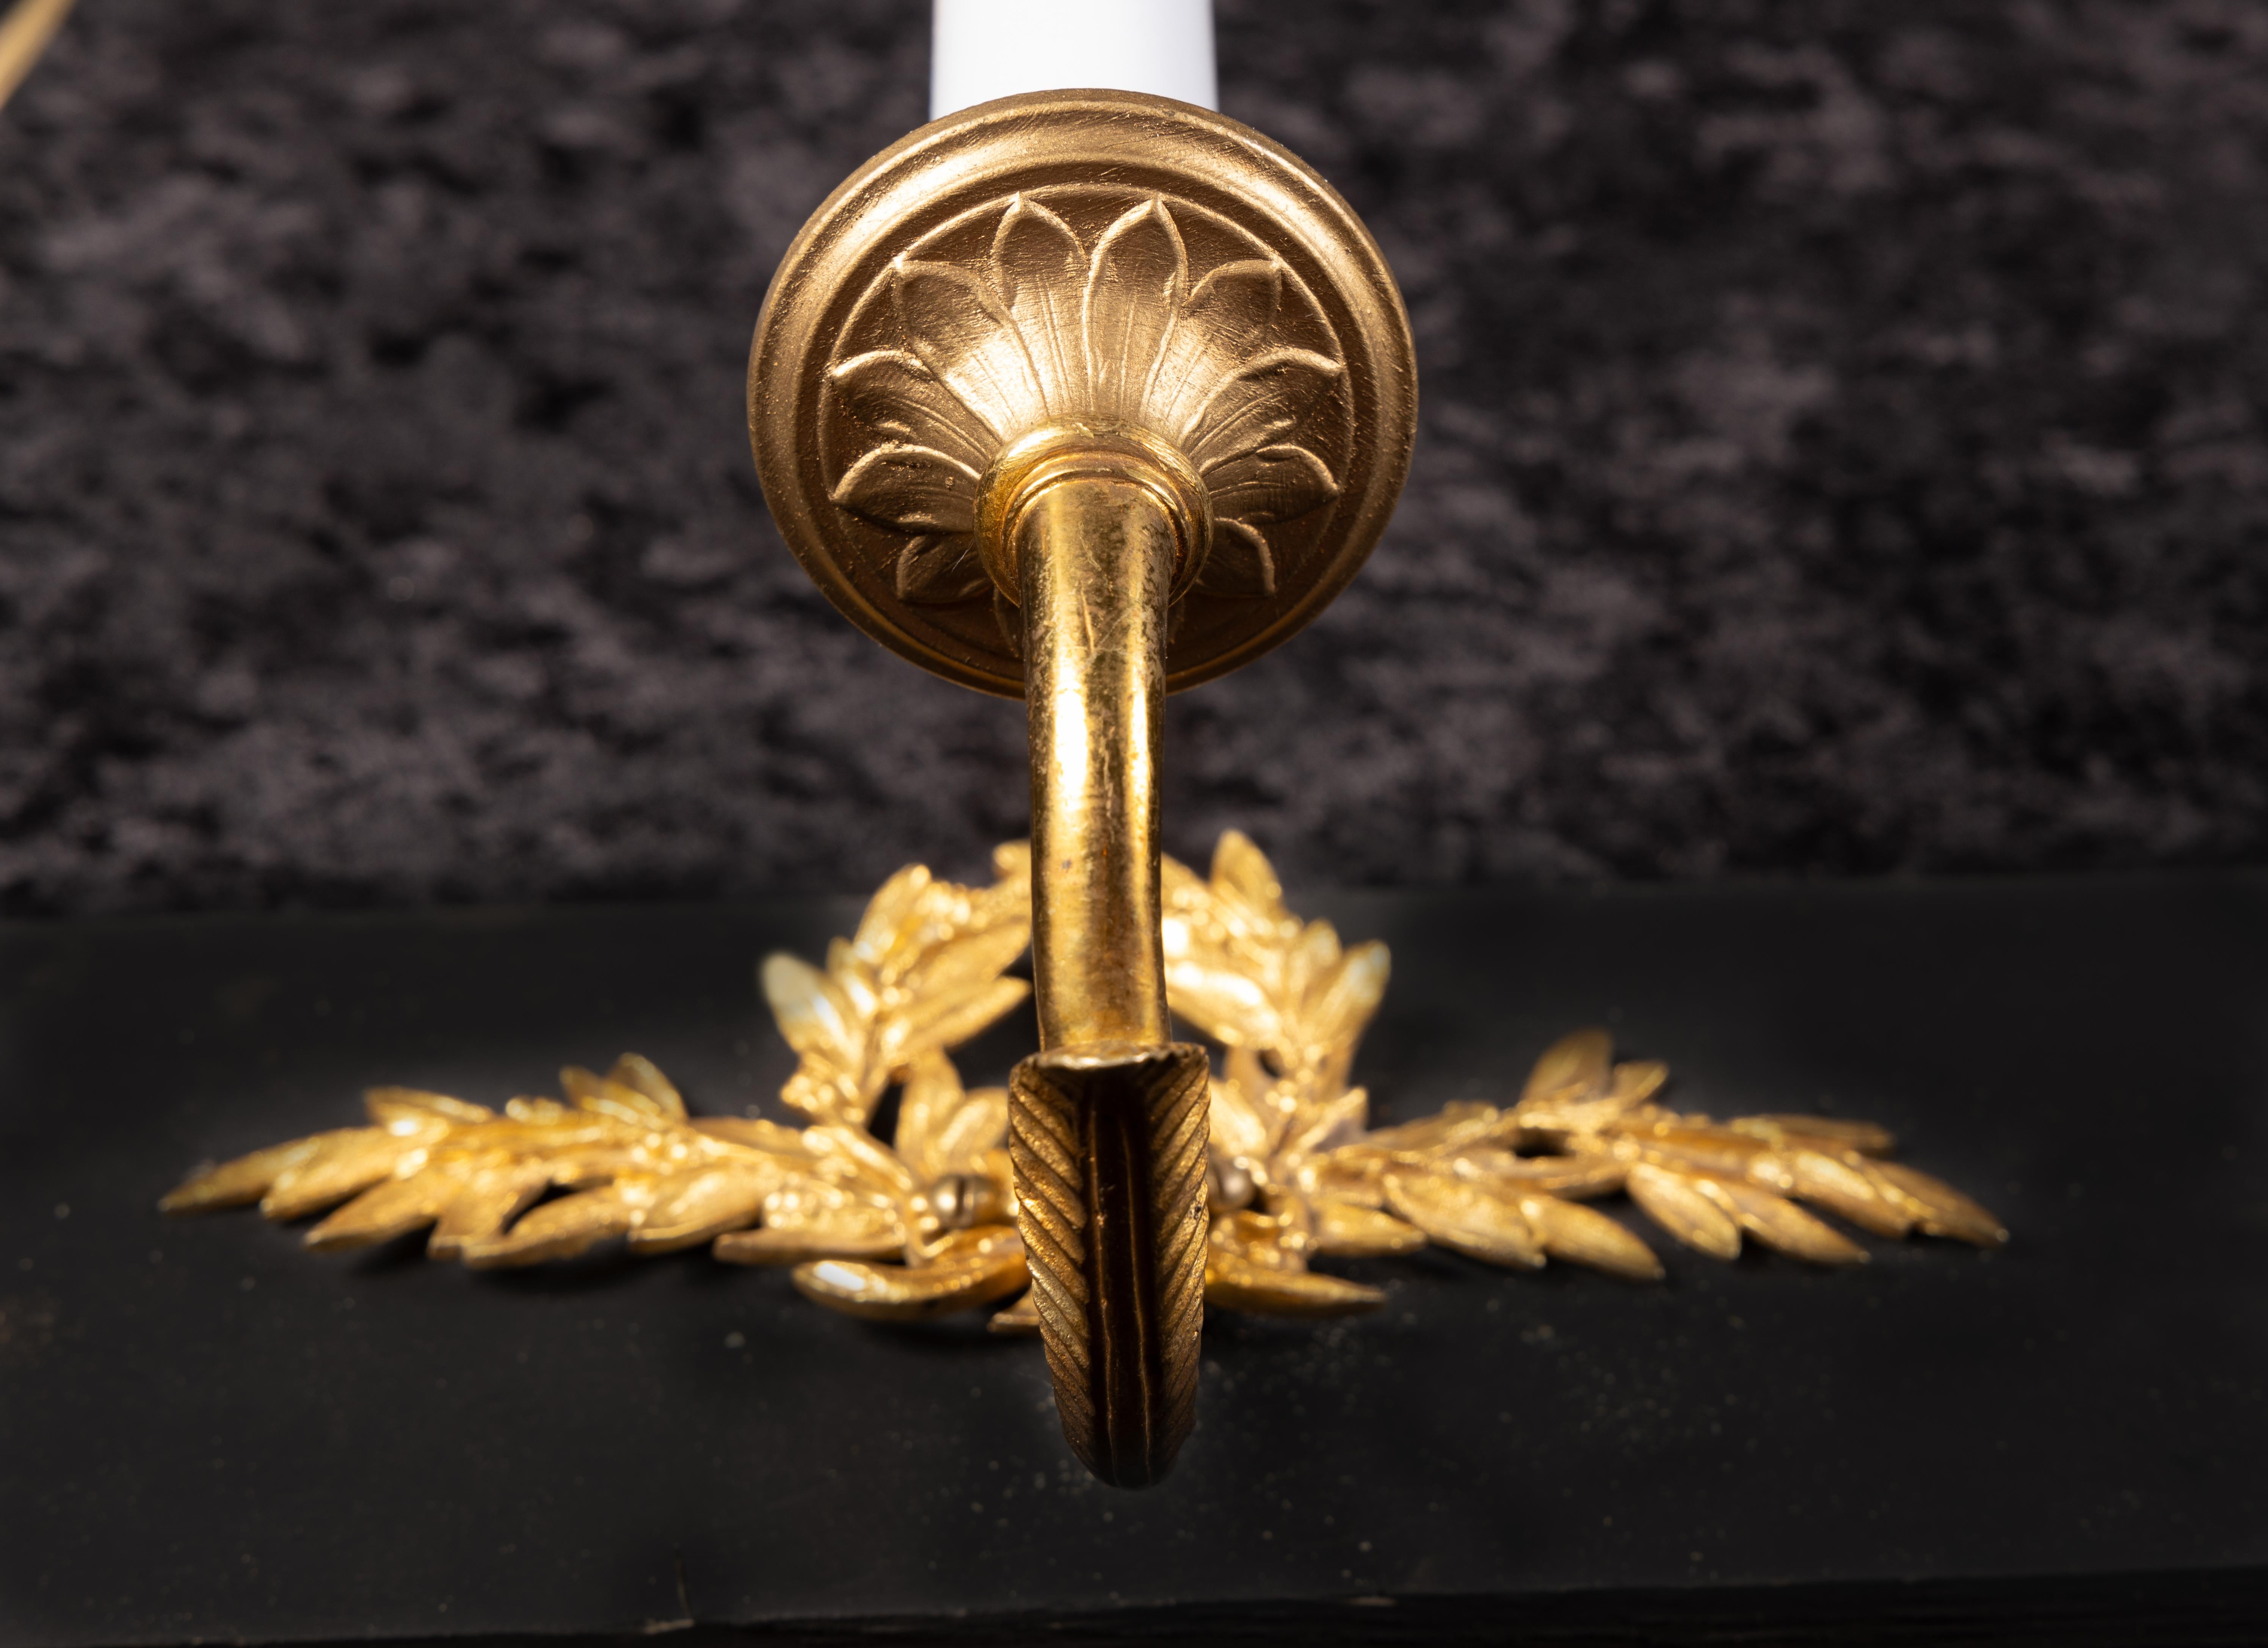 Wunderschöne französische Bronzeleuchter aus dem 19. Jahrhundert im Louis XVI-Stil mit einer schönen ziselierten Bandrückwand. Satz von drei verfügbar.

Jedes Stück in unserem Geschäft ist professionell neu verkabelt und funktionstüchtig. Sie wurden